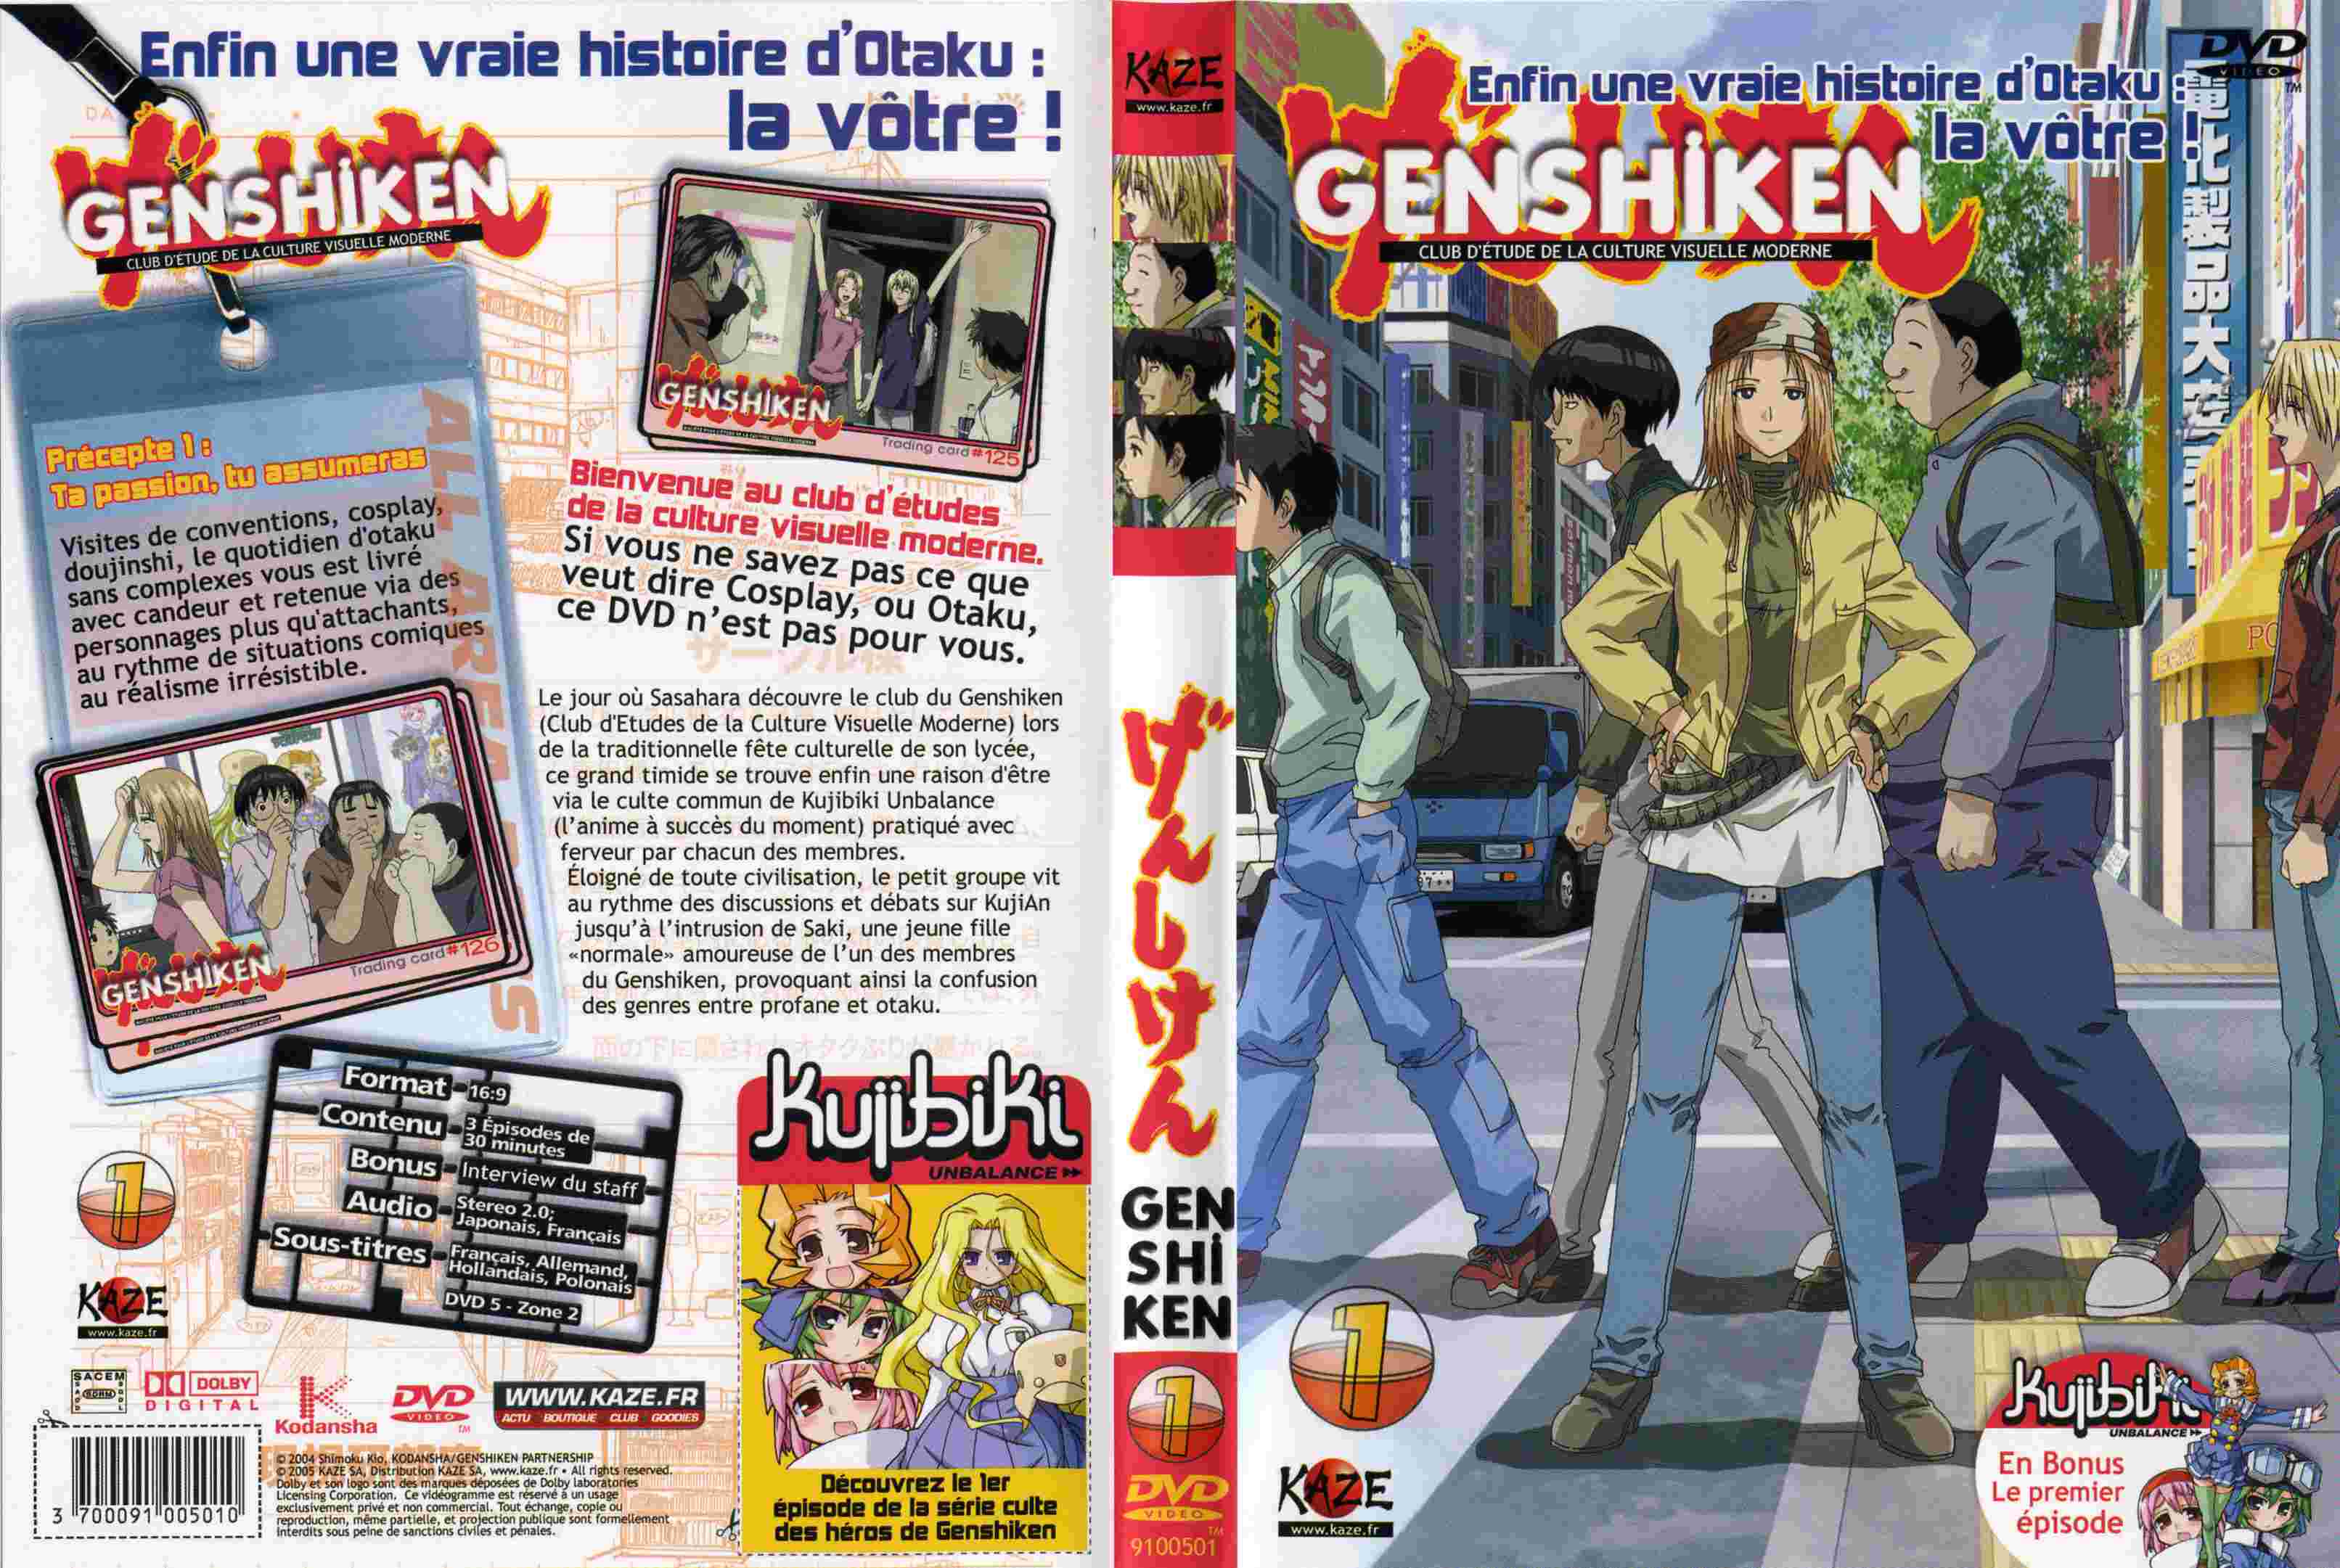 Jaquette DVD Genshiken vol 01